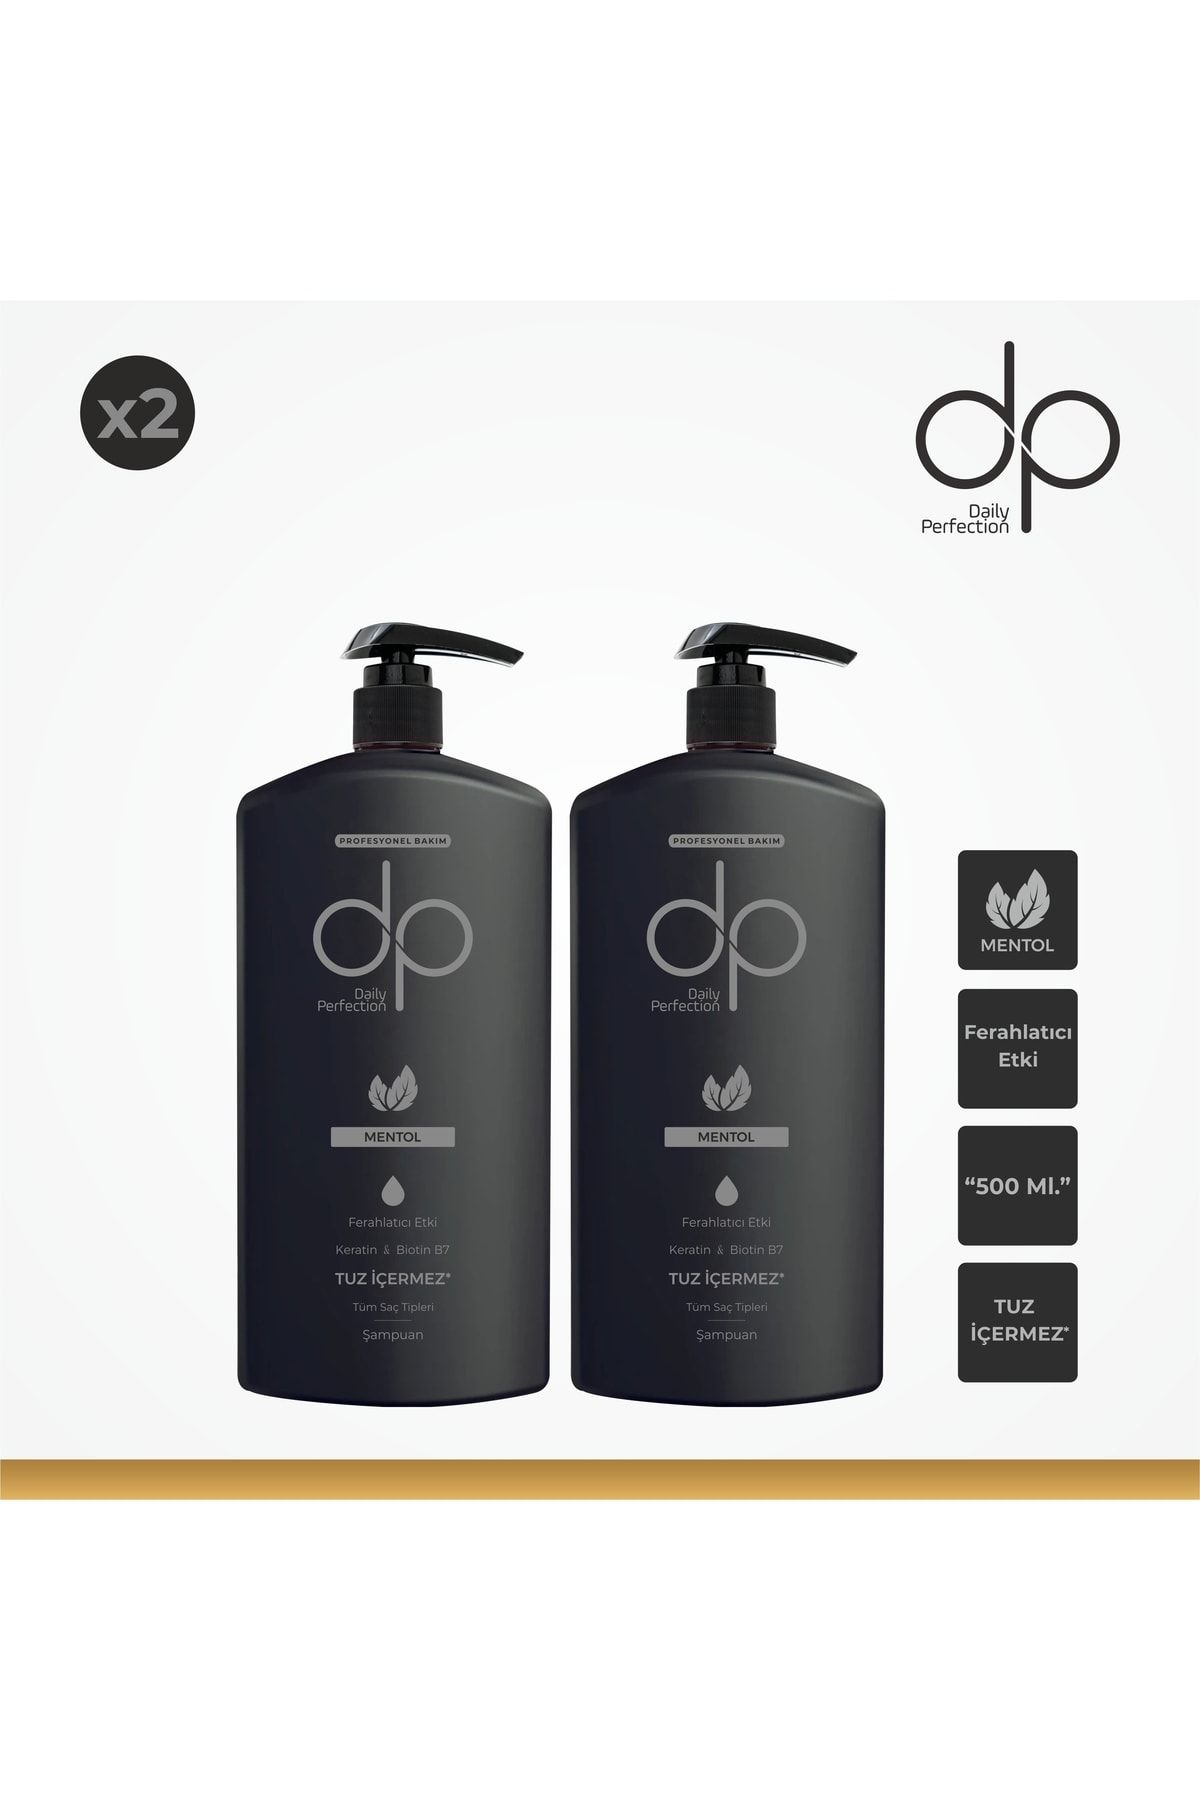 DP Daily Perfection Mentol Ferahlatıcı Etki Şampuan 2 Adet 500 ml